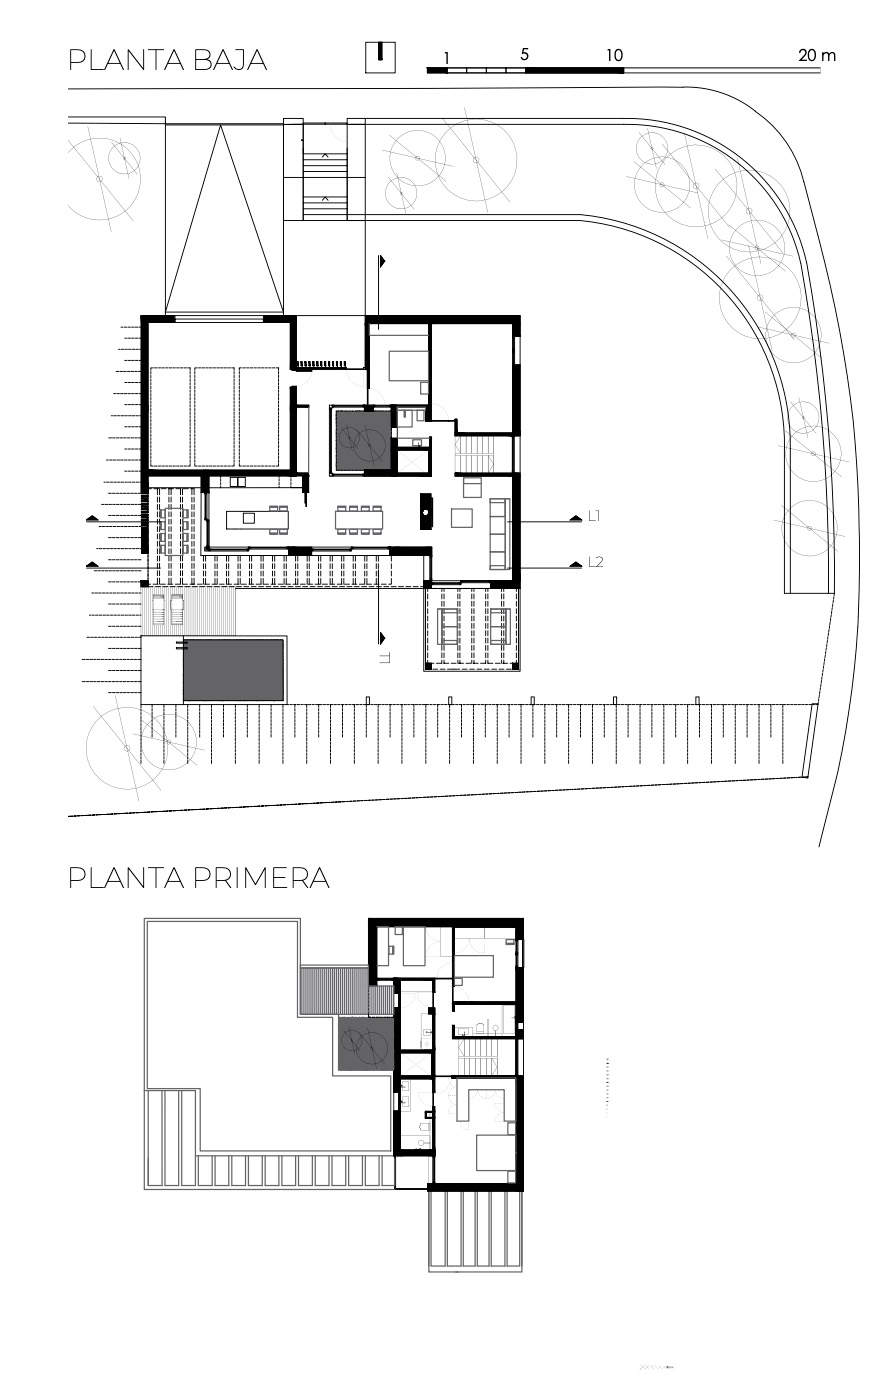 Un ejemplo de plano de dos plantas que puede convertirse en una casa de una sola altura